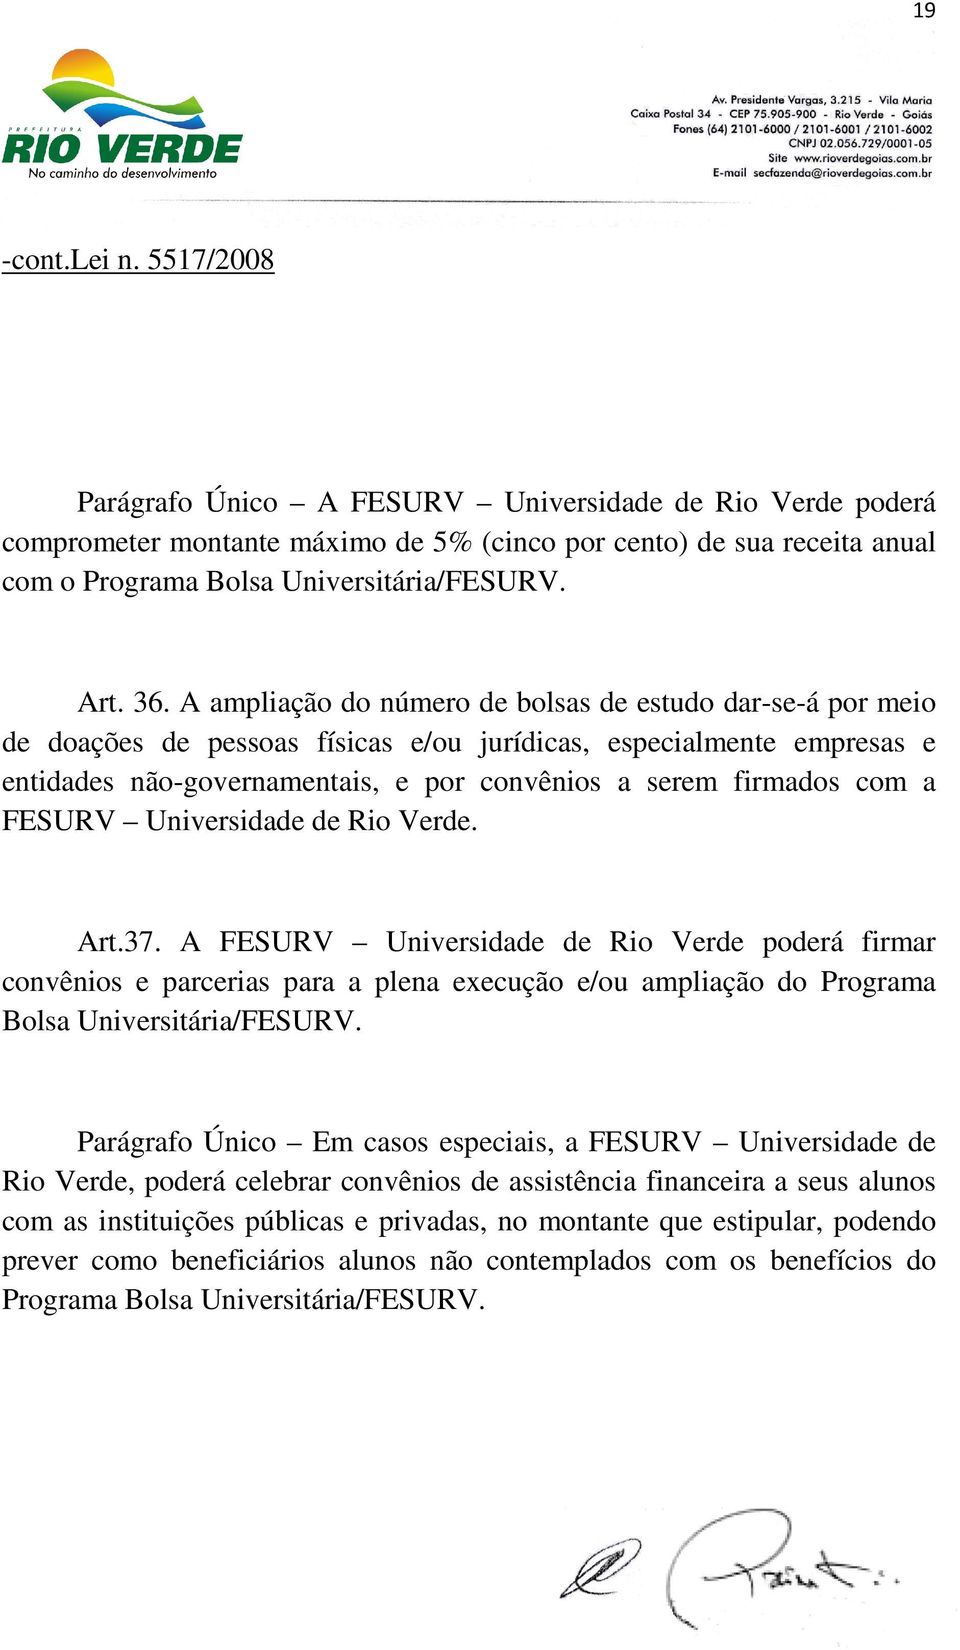 FESURV Universidade de Rio Verde. Art.37. A FESURV Universidade de Rio Verde poderá firmar convênios e parcerias para a plena execução e/ou ampliação do Programa Bolsa Universitária/FESURV.